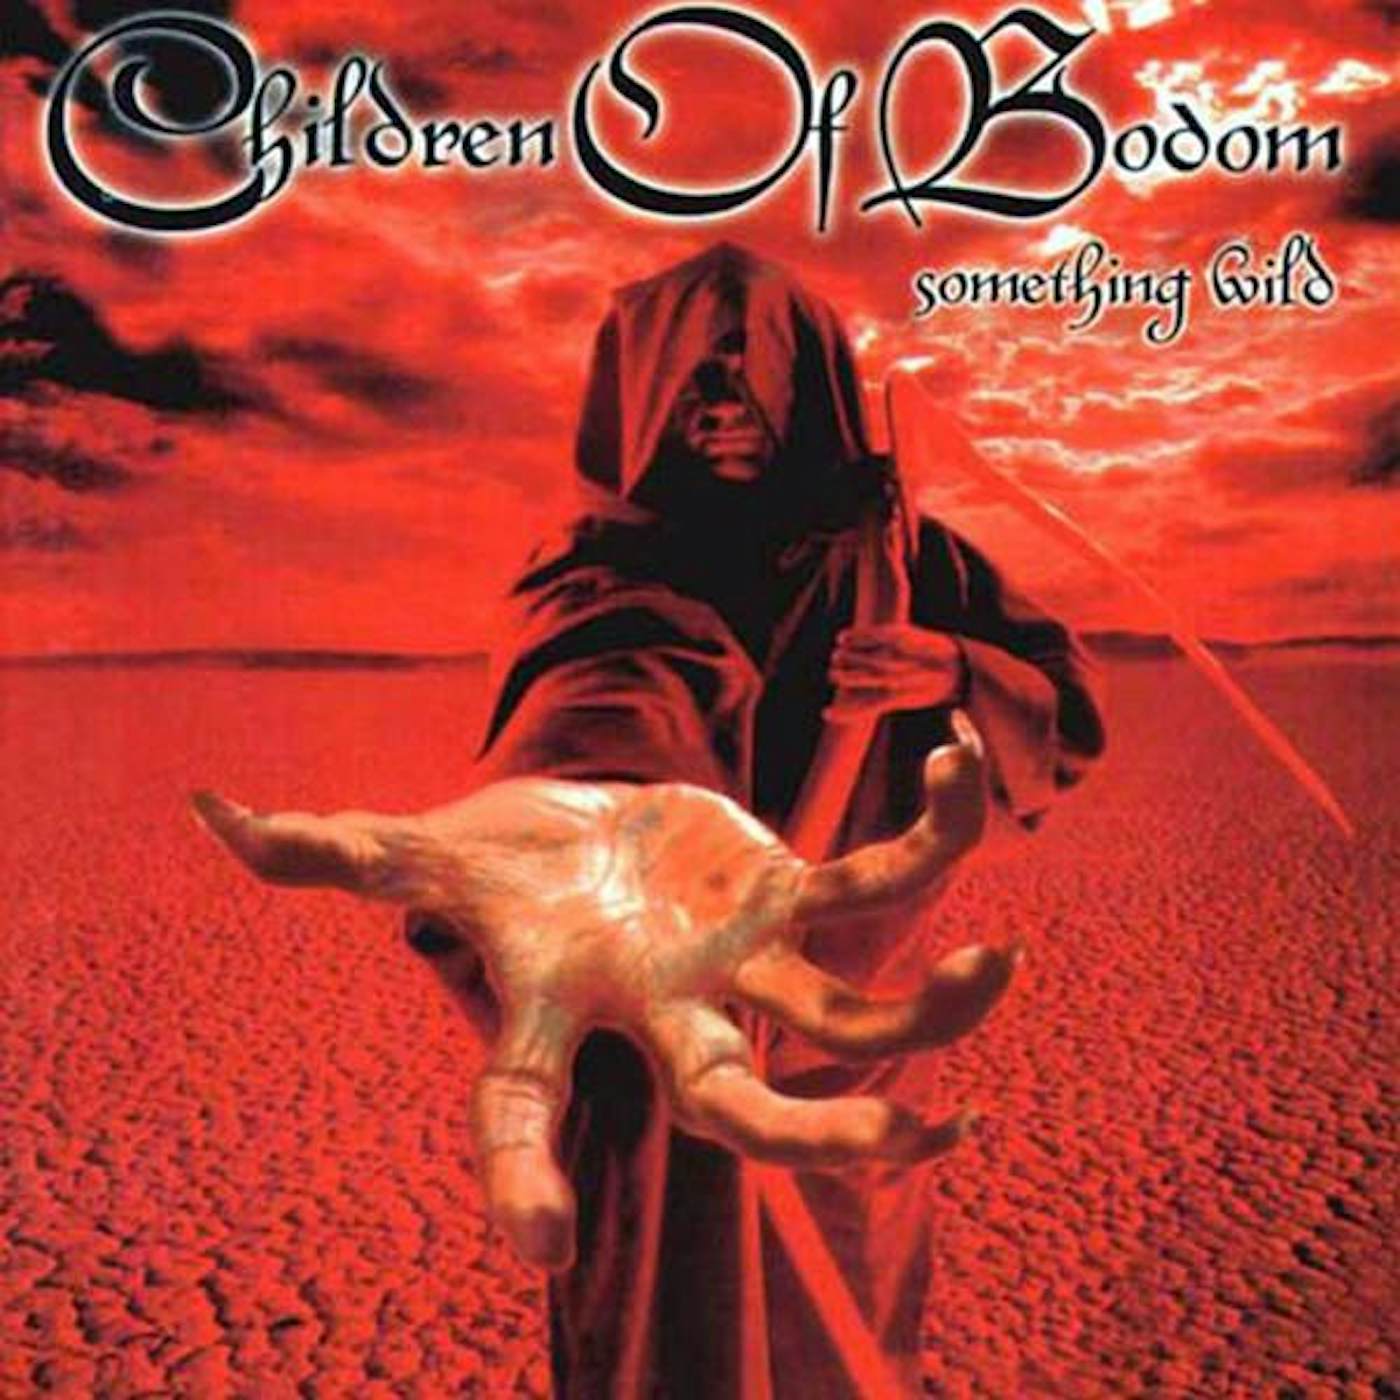 Children Of Bodom SOMETHING WILD Vinyl Record